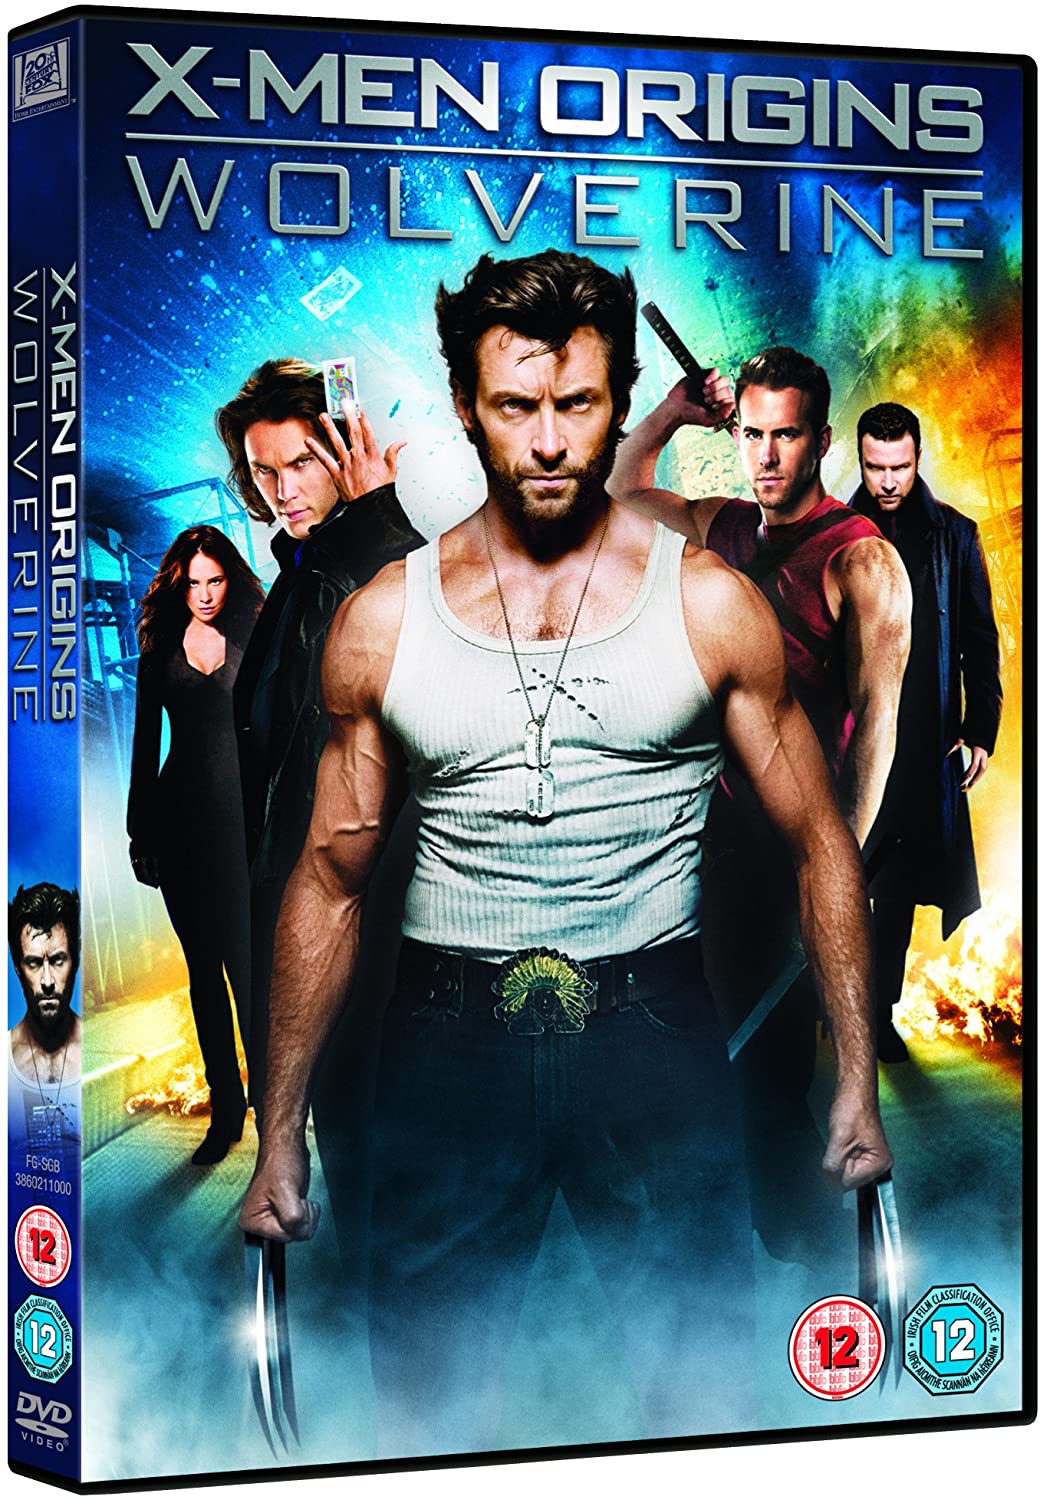 X-Men Origins: Wolverine (2009) - Action [DVD]